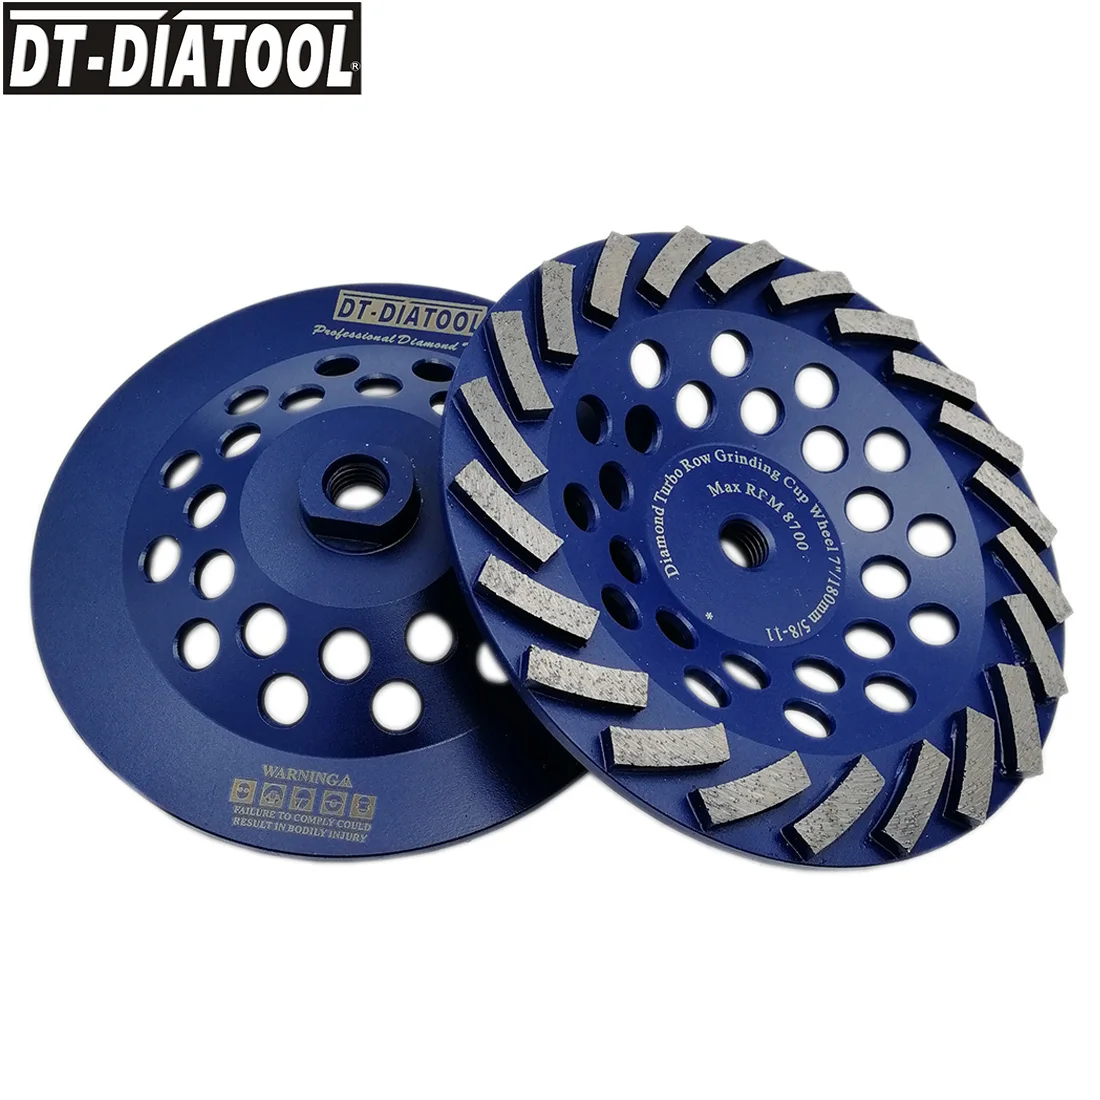 DT-DIATOOL 2 шт Сегментированный Алмаз турбо ряд чашевидный шлифовальный круг для бетона твердый камень с 5/8-11 резьба Диаметр 180 мм/7 дюймов